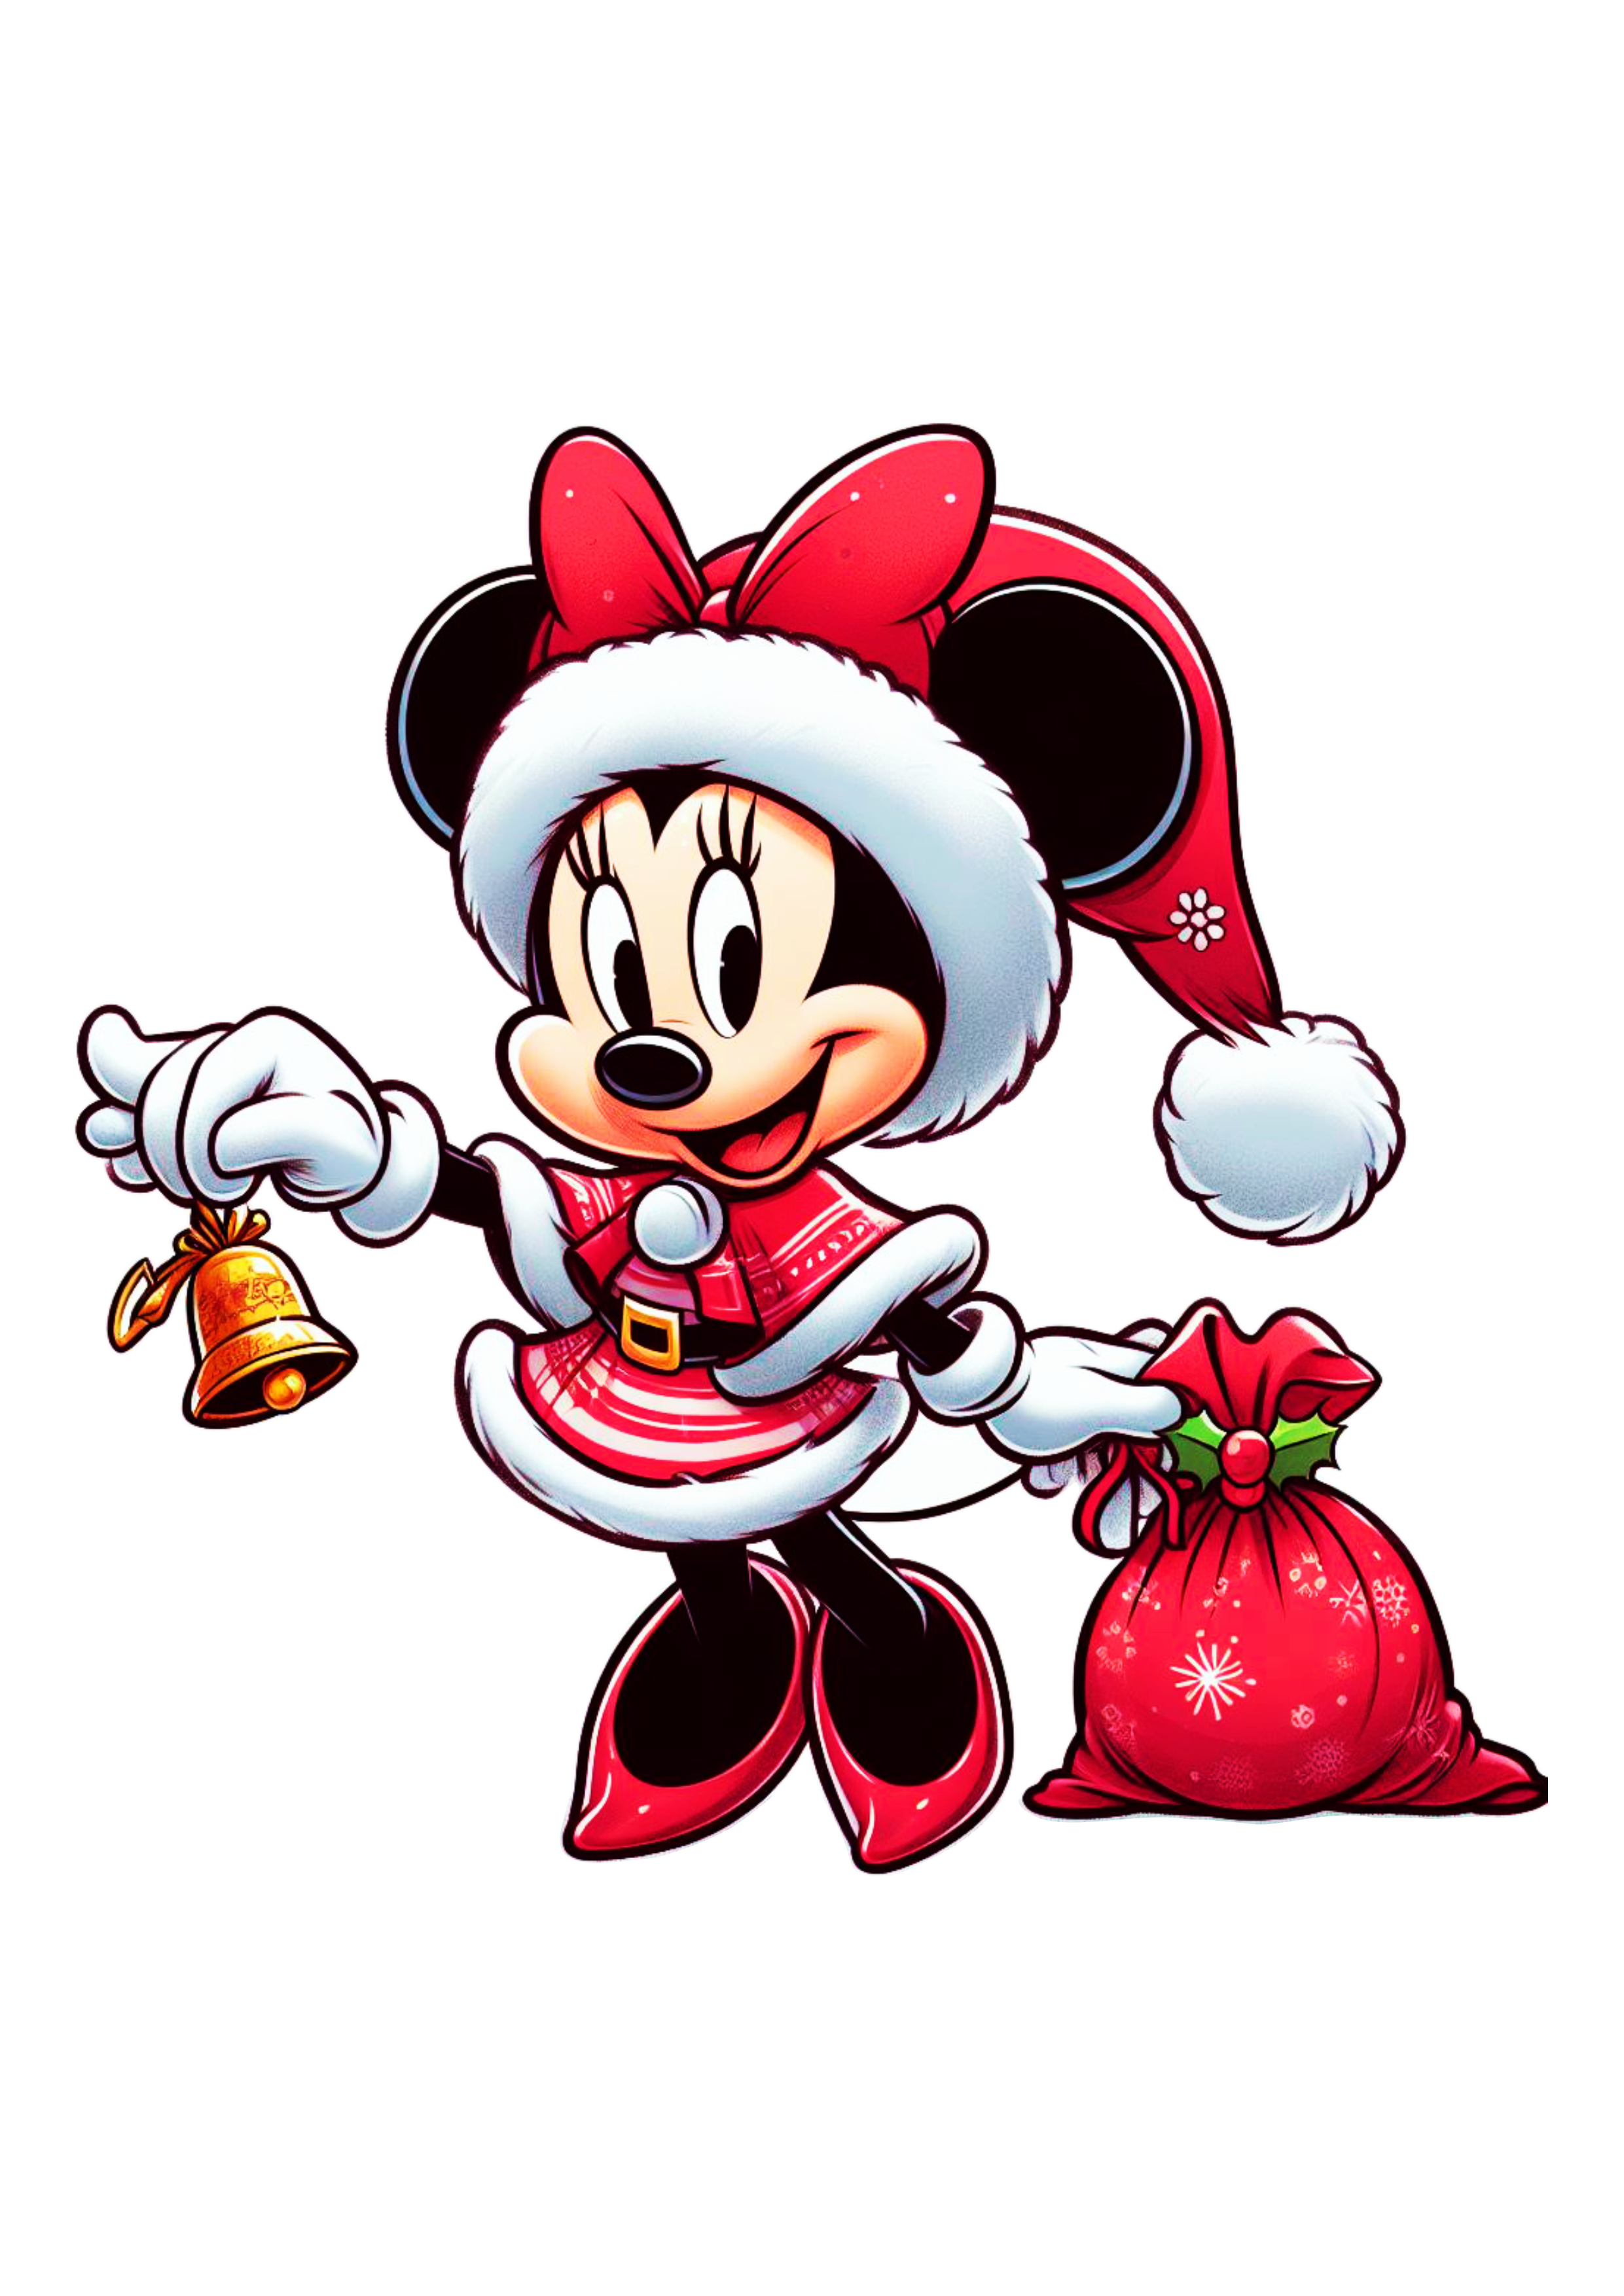 Minnie Mouse vermelha com vestido de natal com sino e saco de presentes png